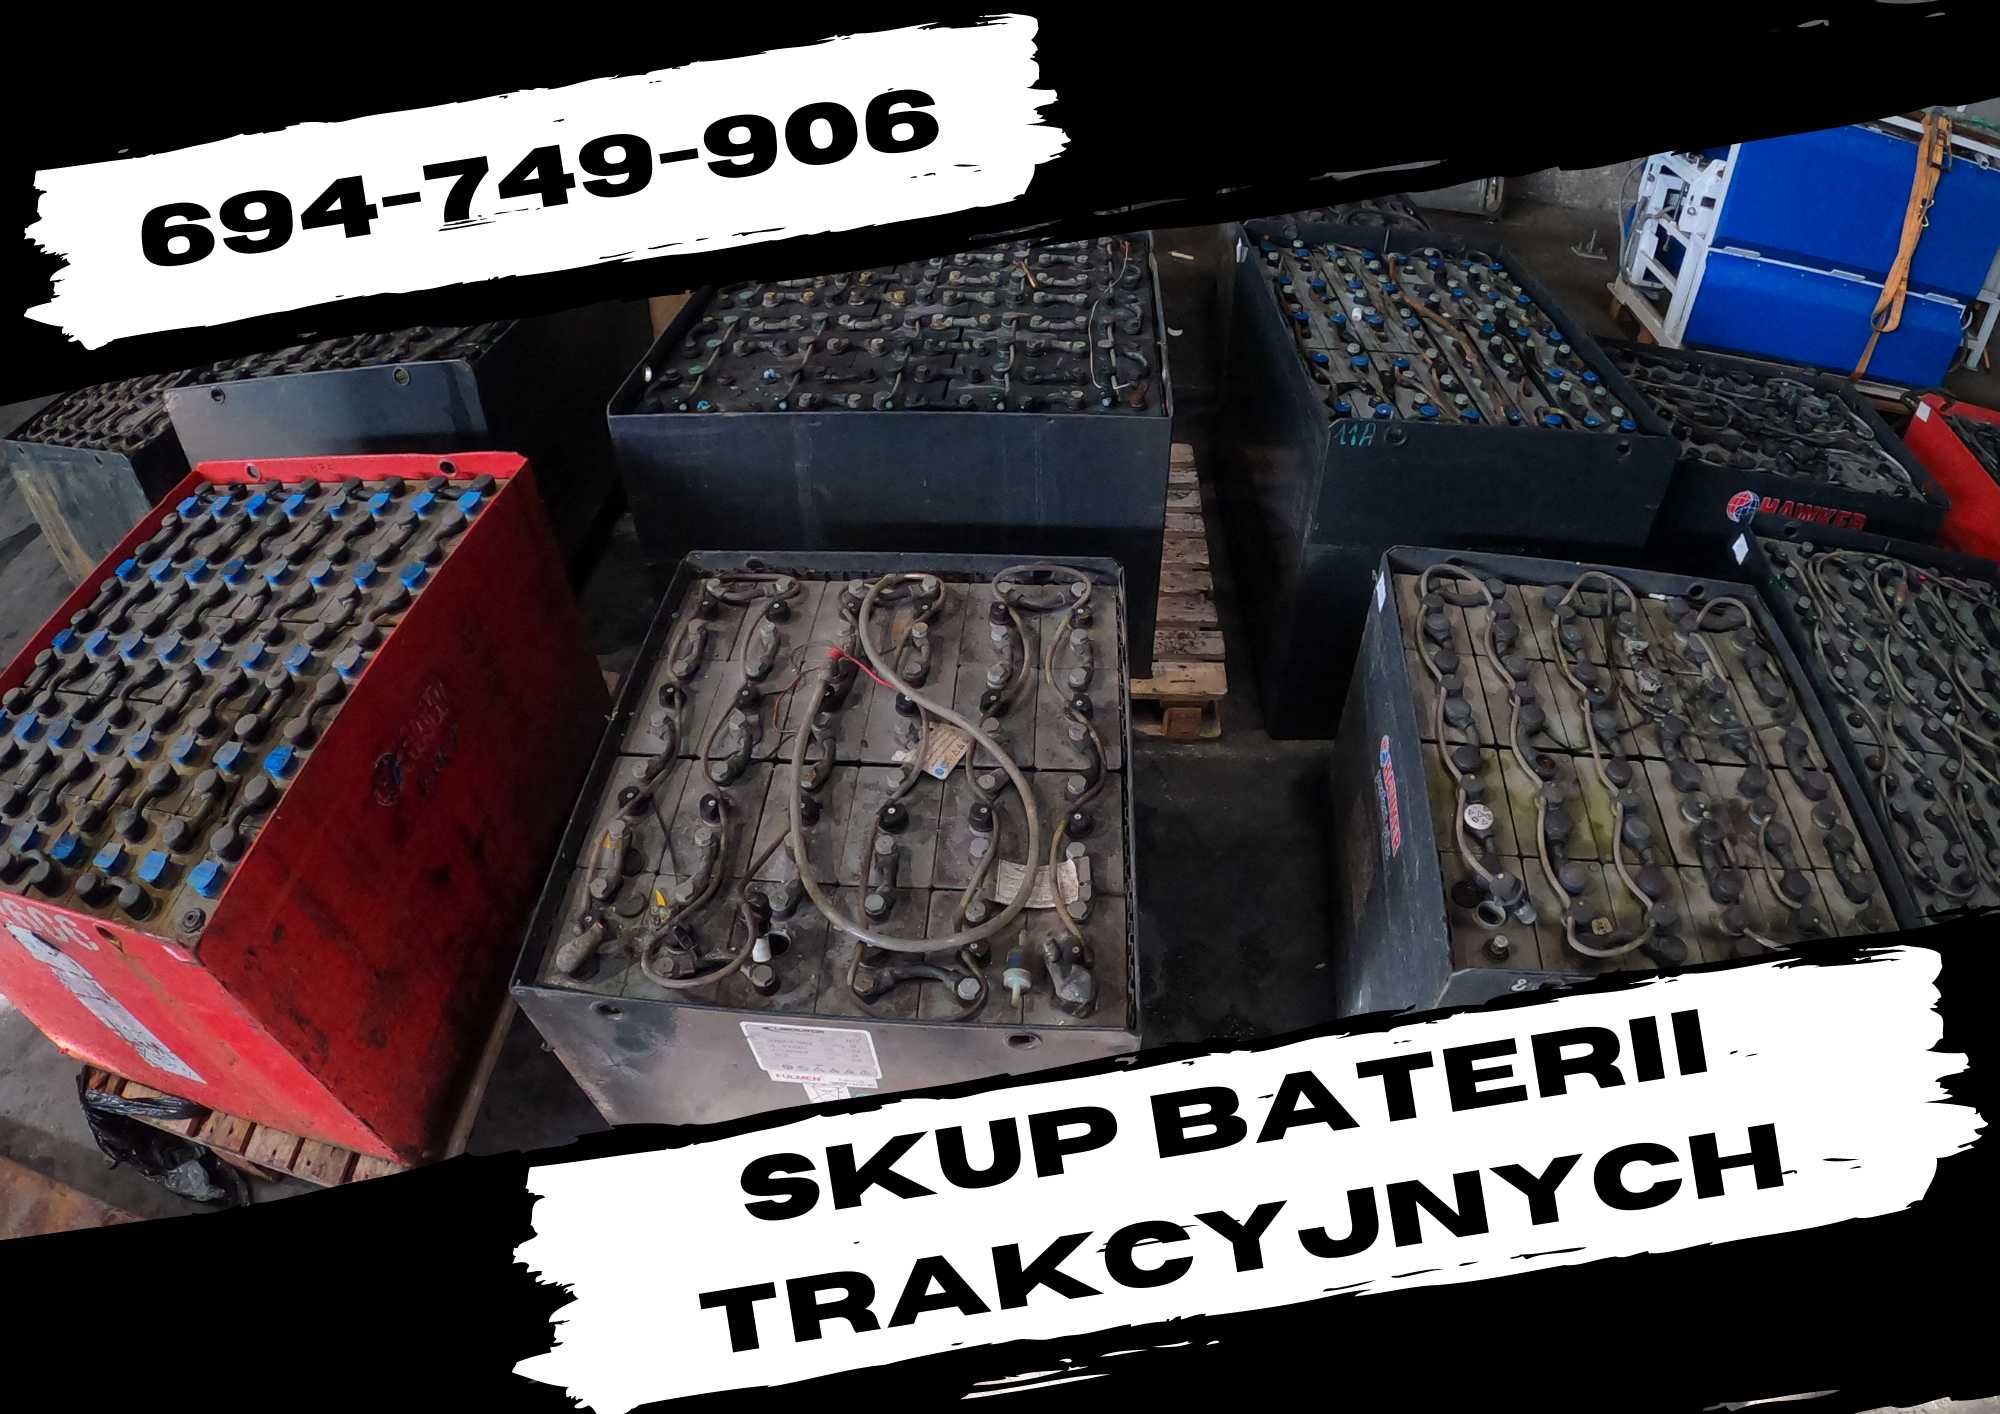 Skup baterii trakcyjnych skup akumulatorów odbiór od klienta